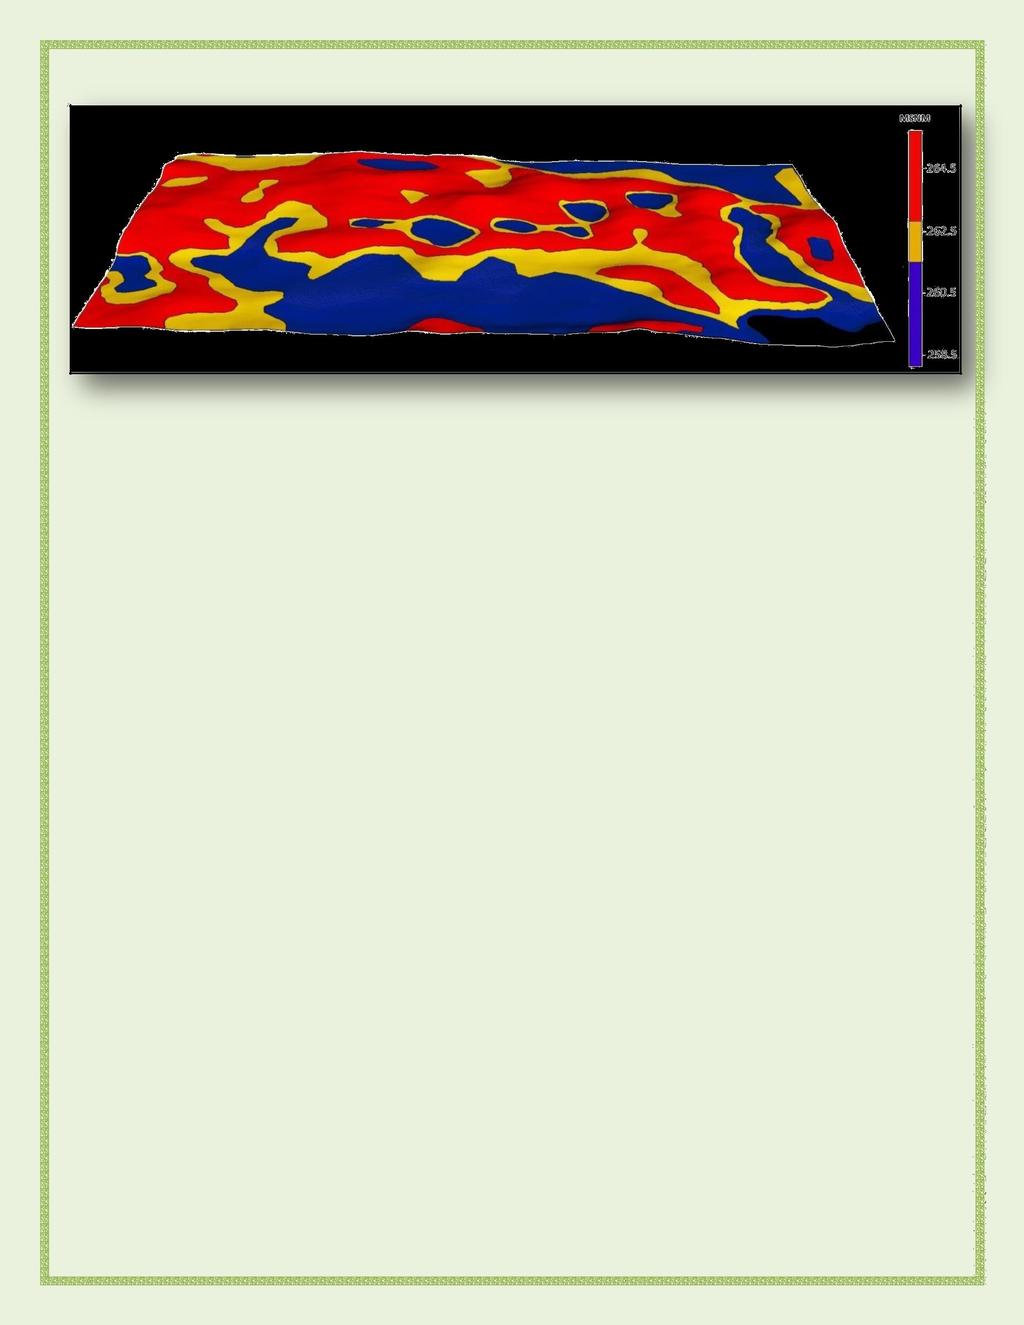 Figura 1: Ambientación sobre altimetría del lote 2w Este análisis dio como resultado que en los ambientes BP el cultivo de maíz sobre centeno rindió en promedio 358 Kg/Ha más que sobre barbecho y en